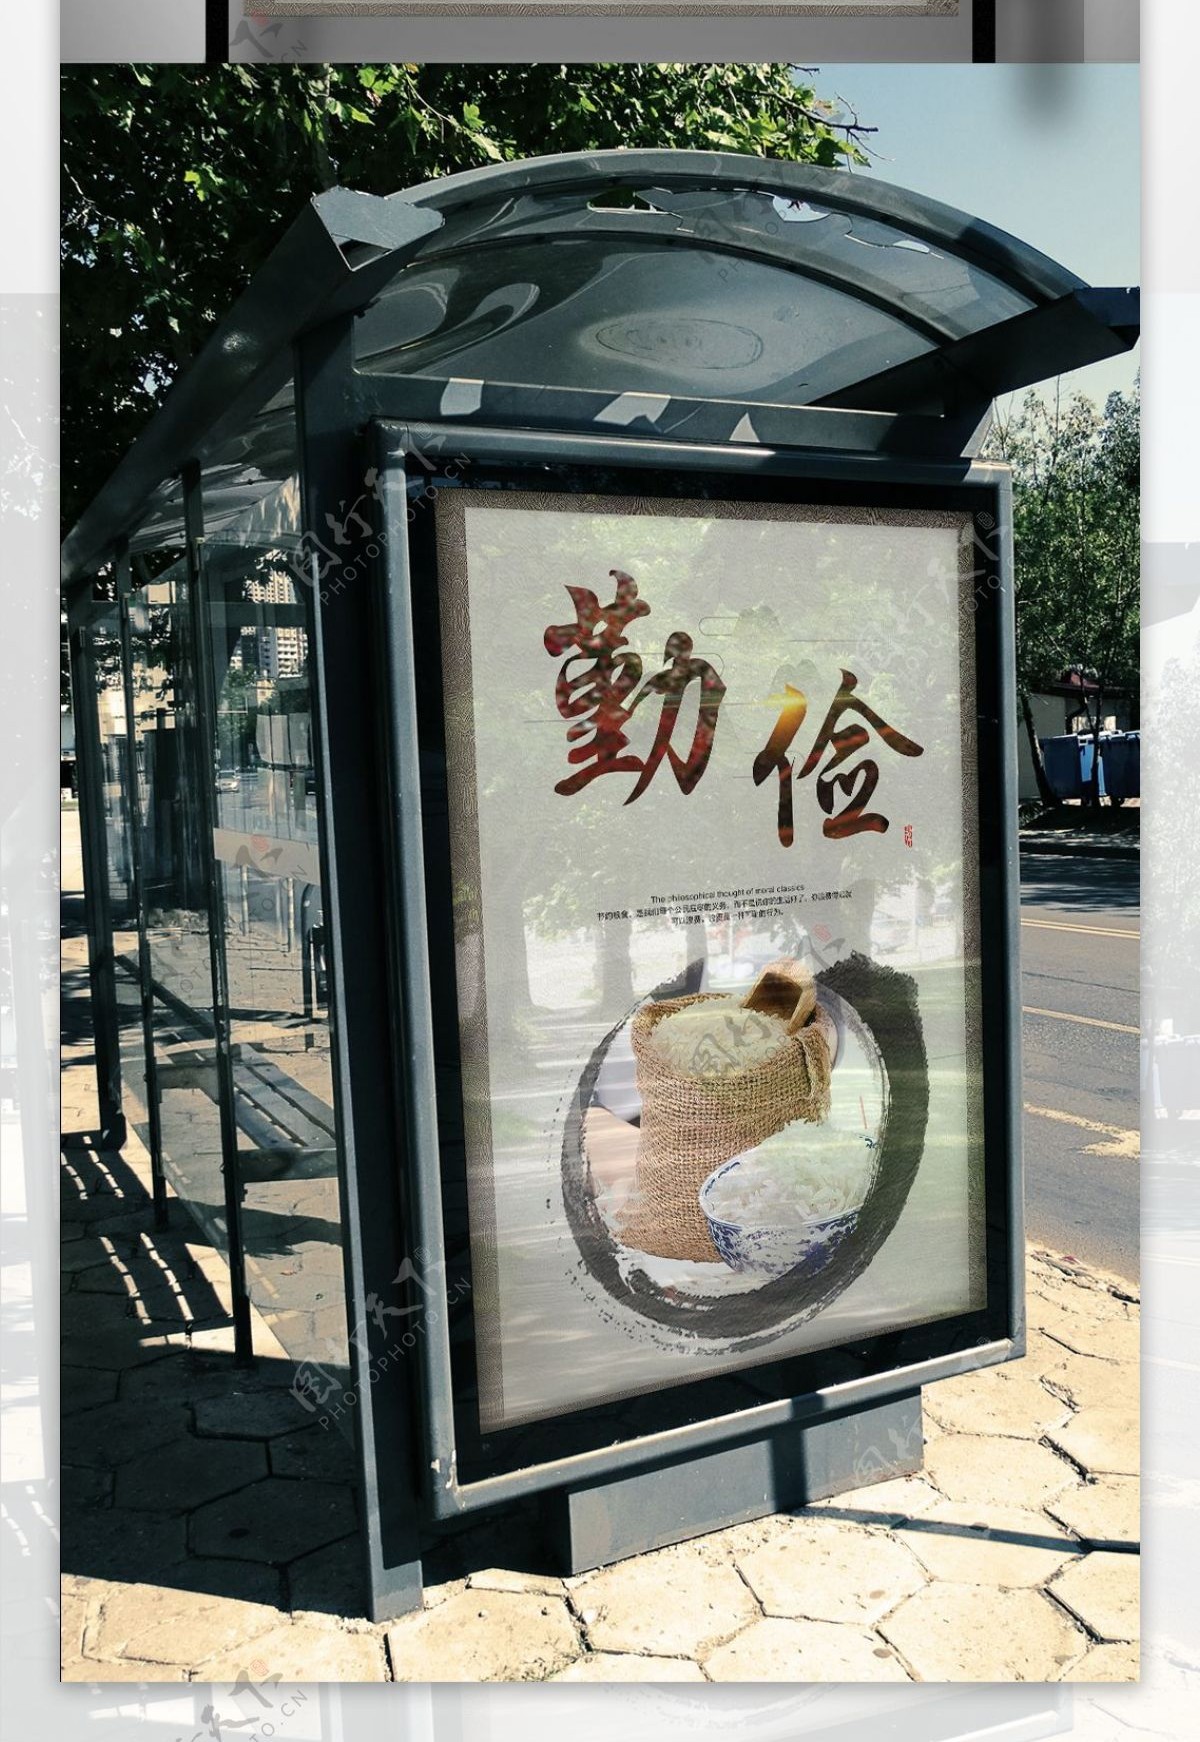 中国风水墨唯美节约粮食公益海报模板